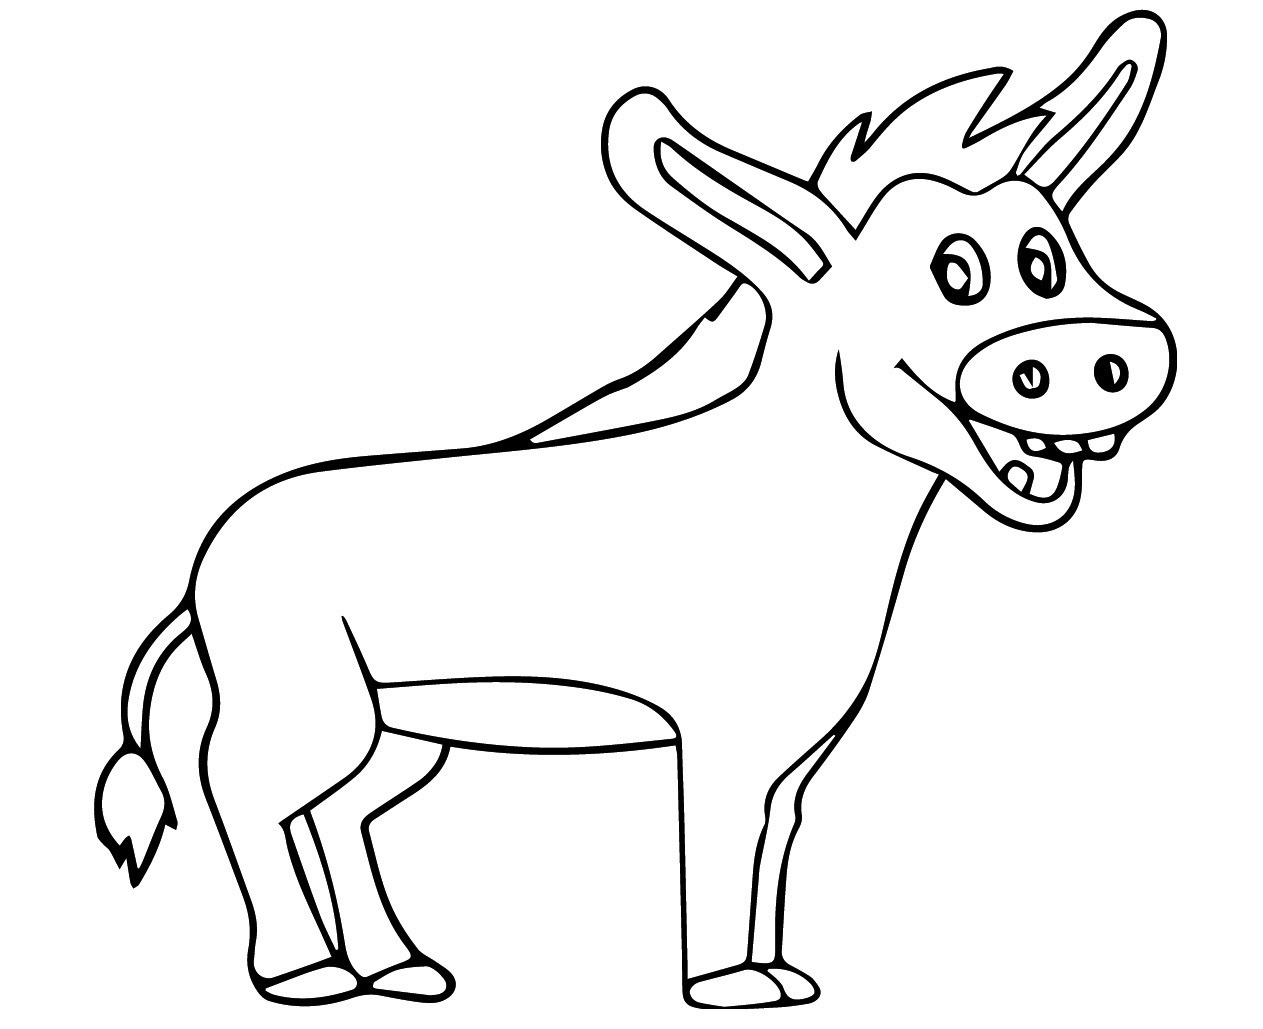 Donkey hero image